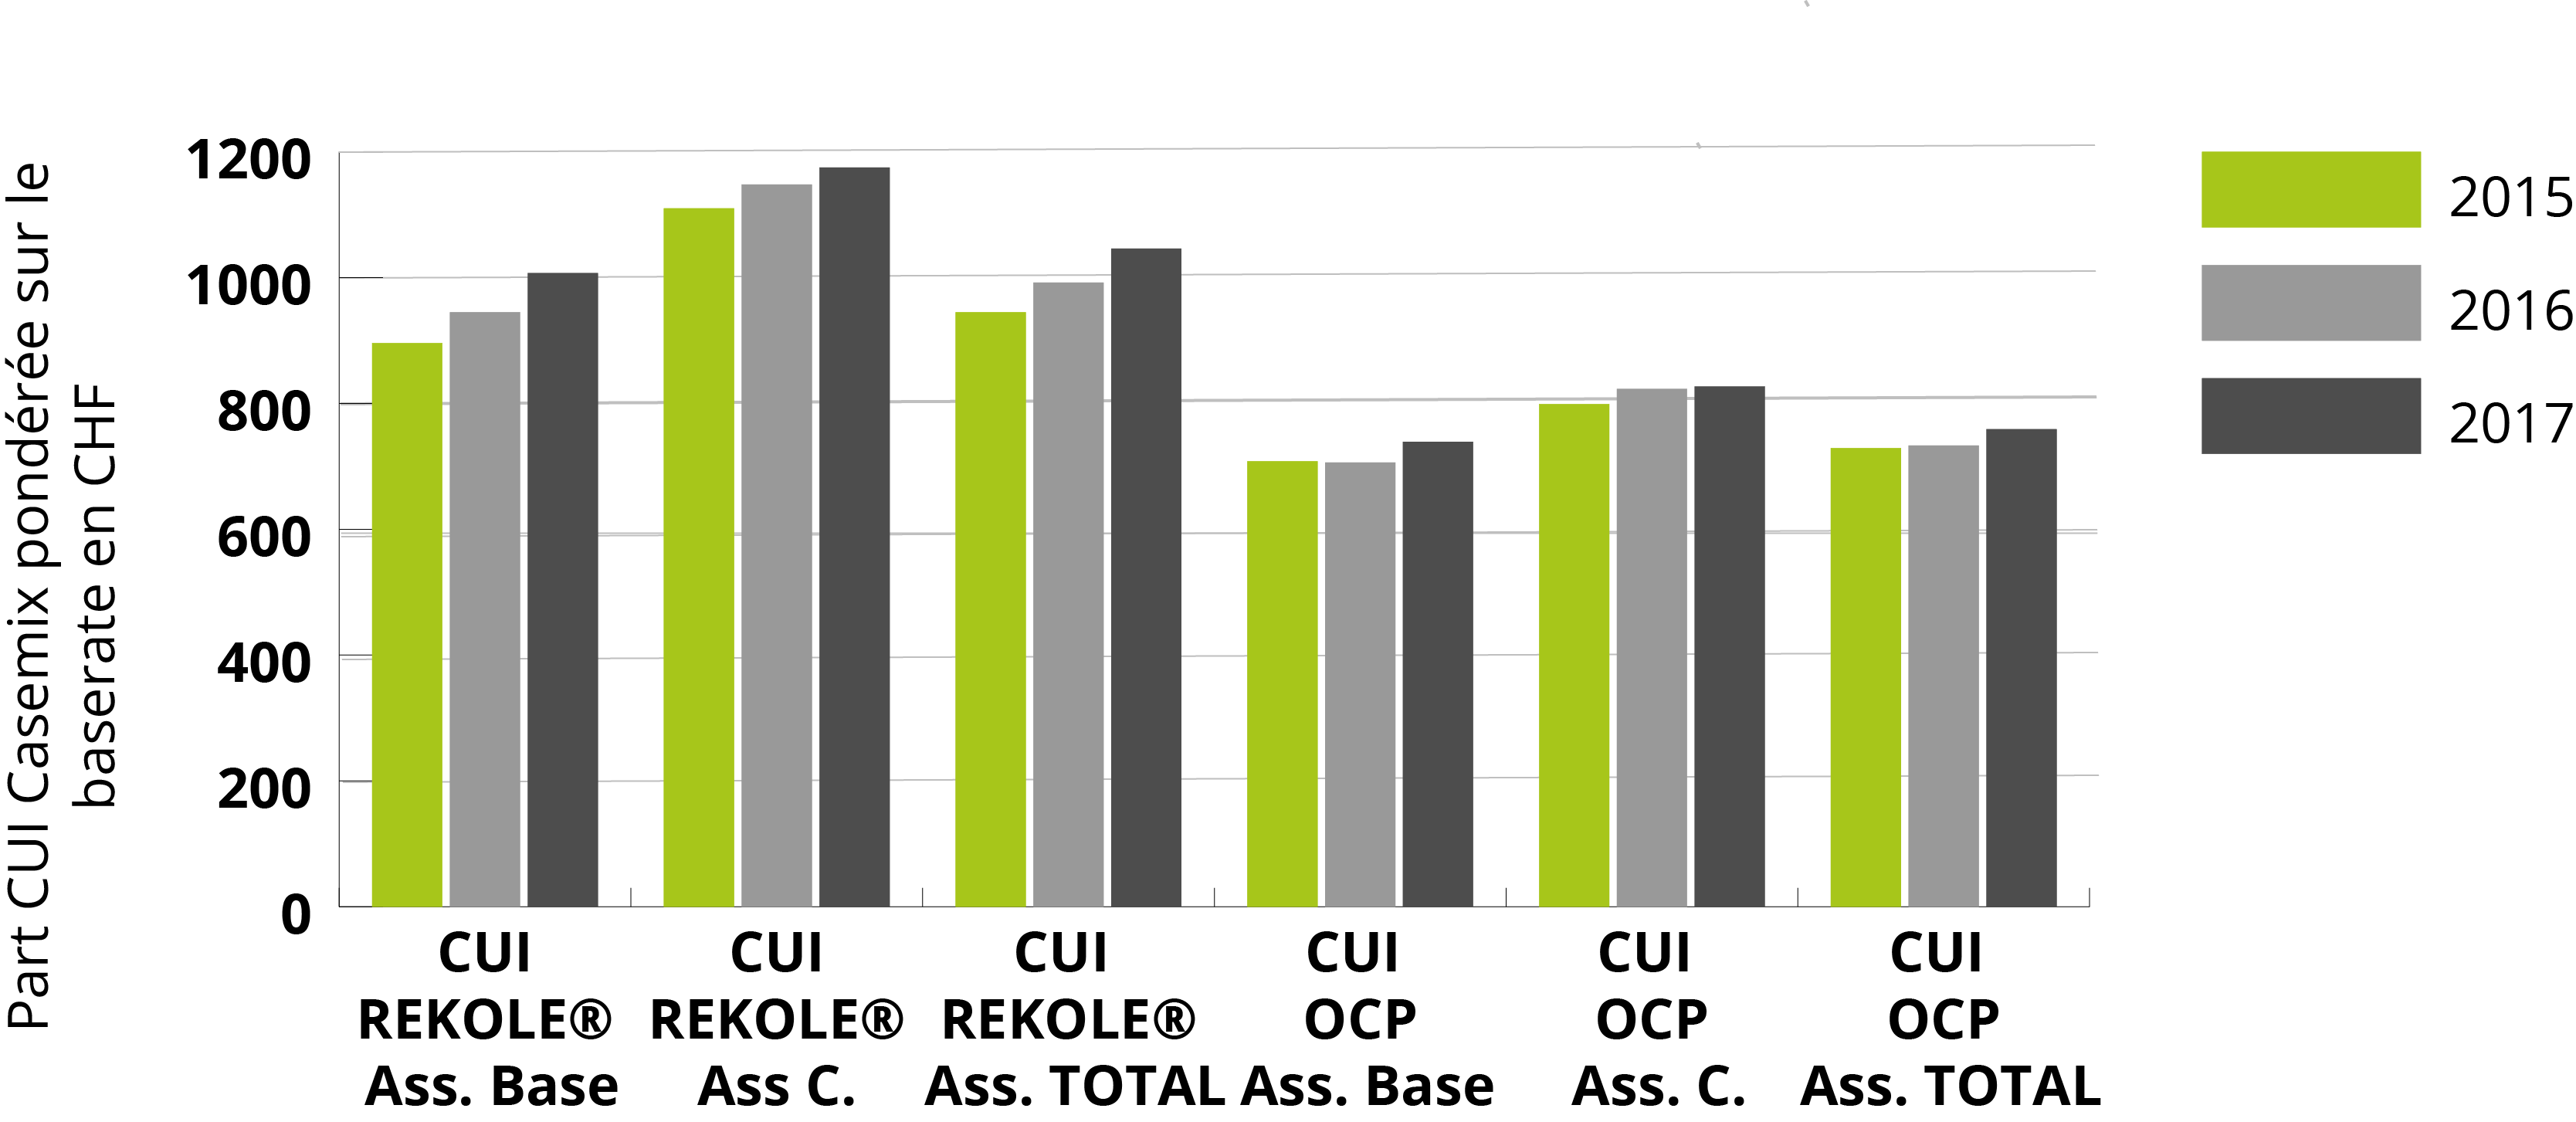 La tendance est nette : la part CUI a augmenté de plus de 10% ces 3 dernières années (CUI selon REKOLE® / source = évaluation des modèles tarifaires HSK 2015-2017)